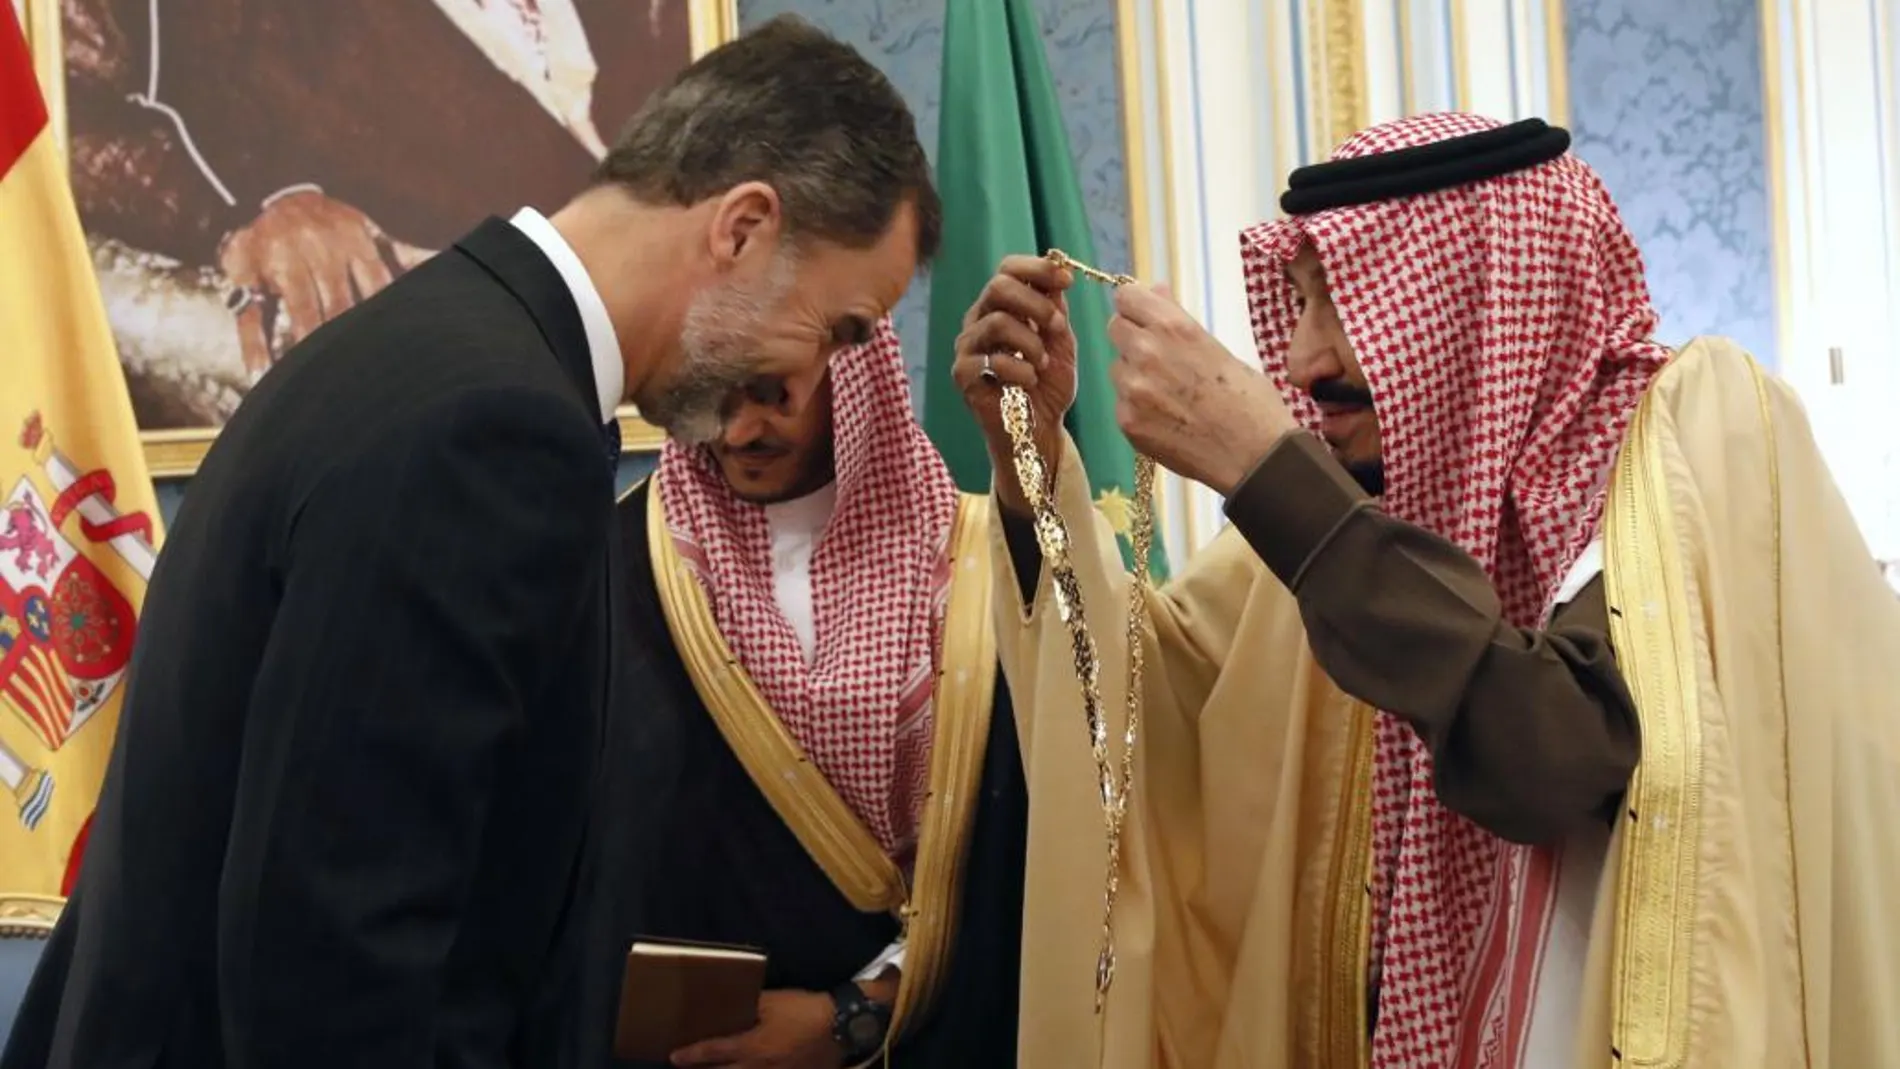 El rey Felipe VI, recibe el Gran Collar, la condecoración más importante que concede el reino saudí, de manos del rey de Arabia Saudí Salman bin Abdelaziz